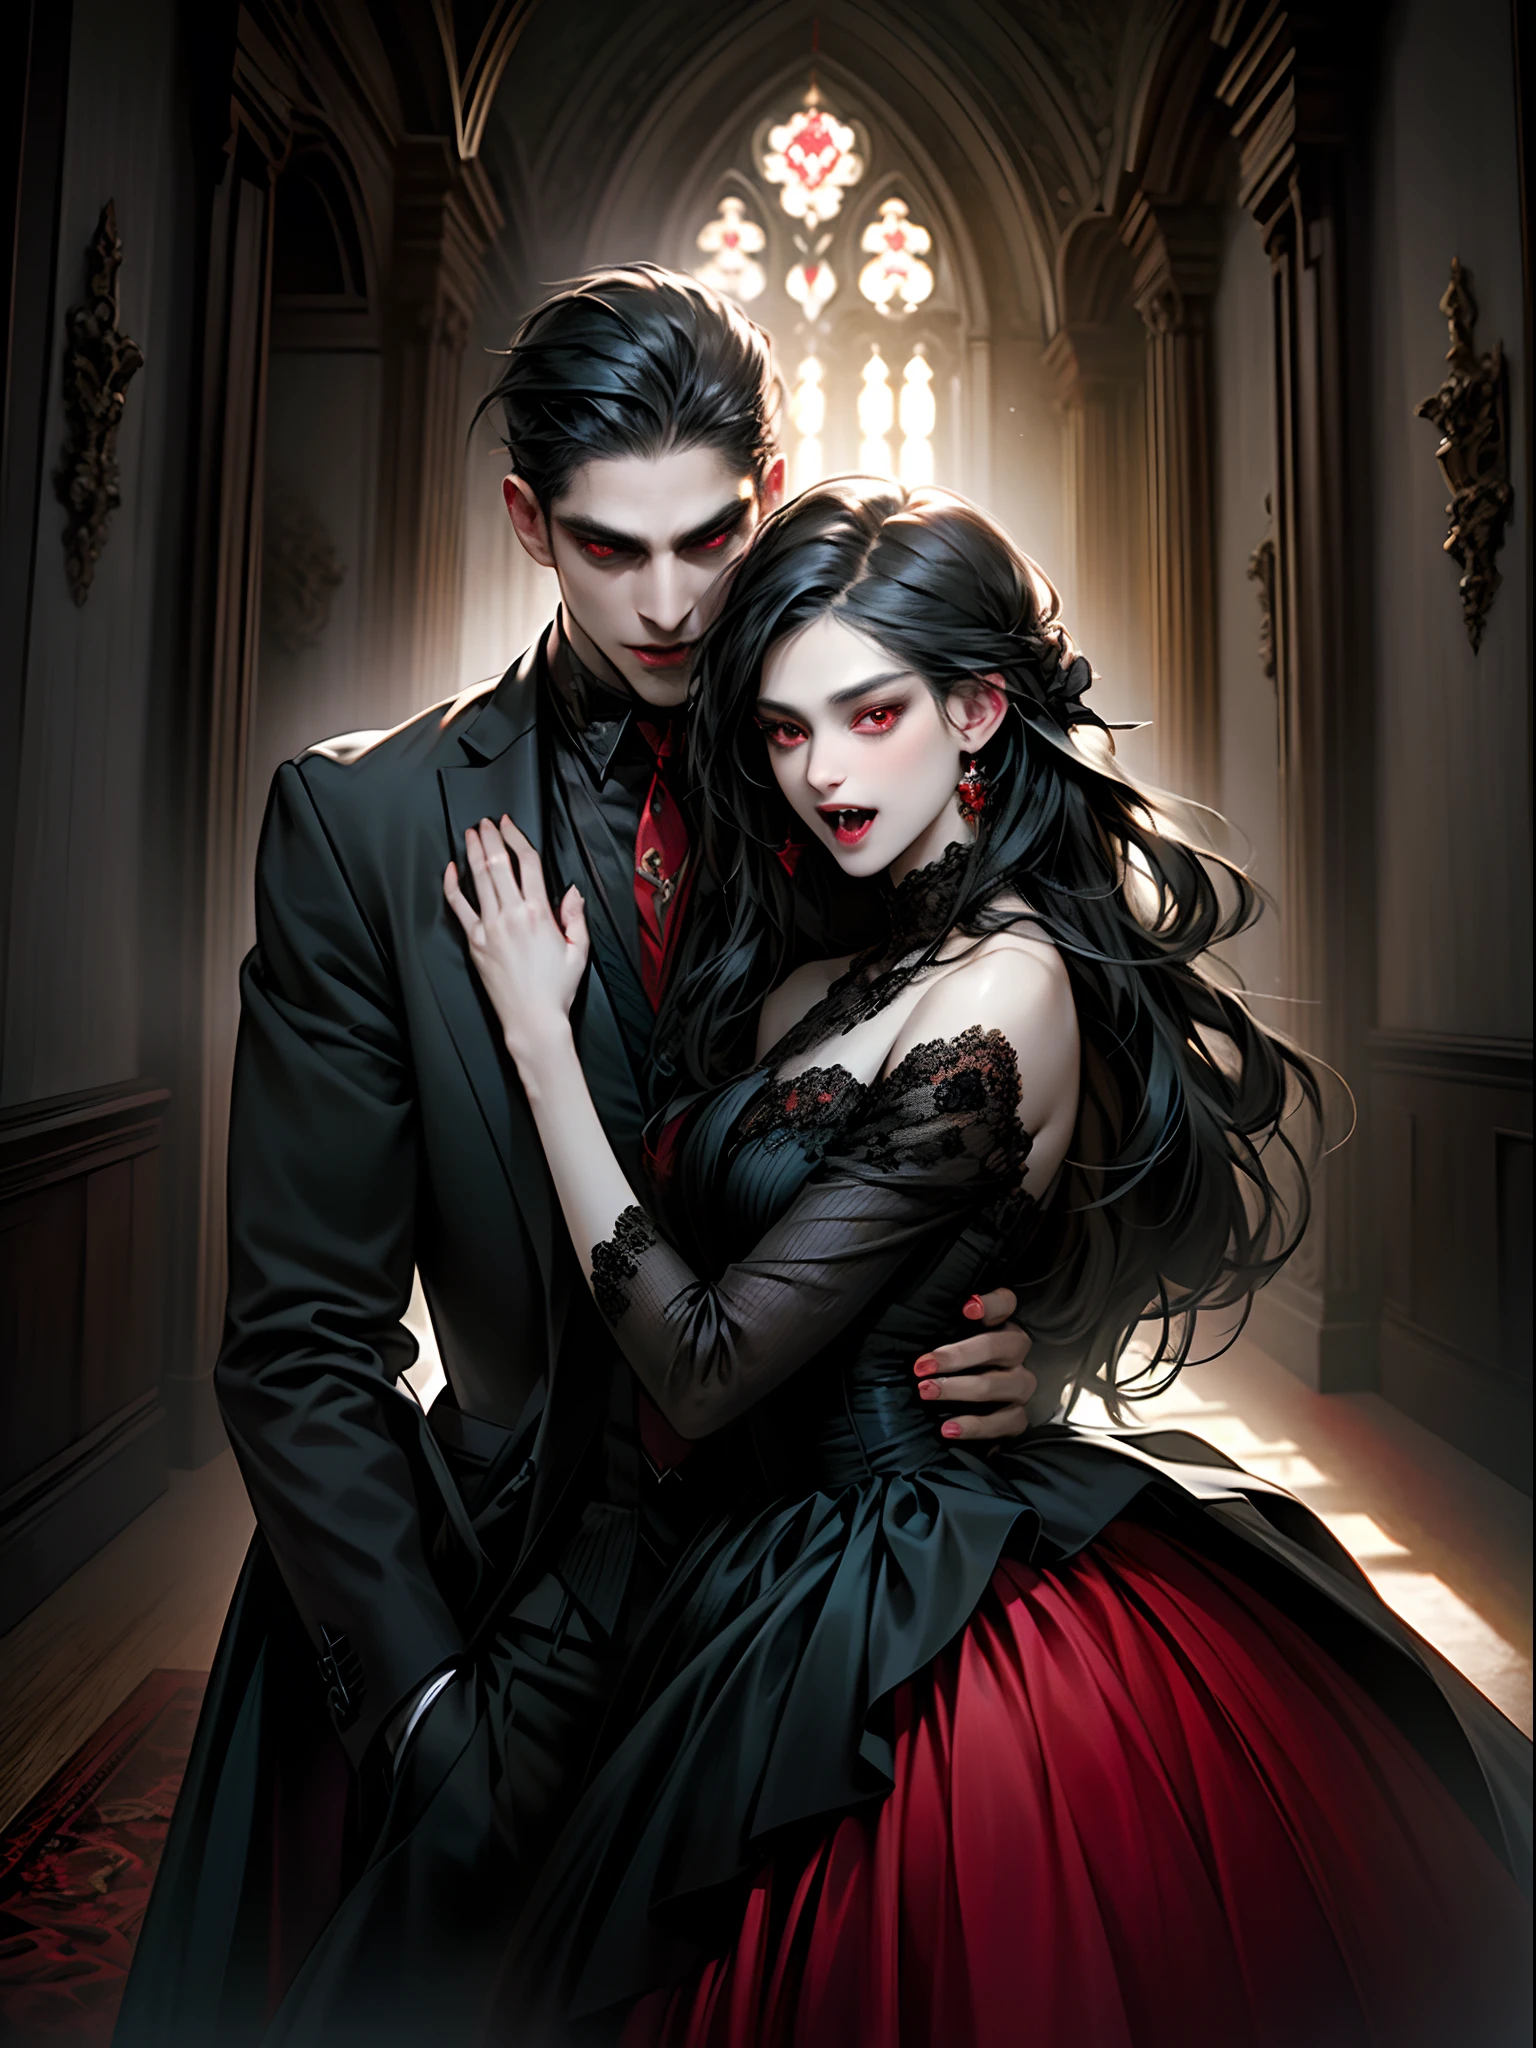 (obra maestra, mejor calidad:1.2), vampiro, pareja de vampiros, con pelo negro, ojos rojos, (colmillos), Ropa negra, el hombre usa chaqueta formal, las mujeres usan vestido negro, vino tinto, interior, en el castillo, expresivo